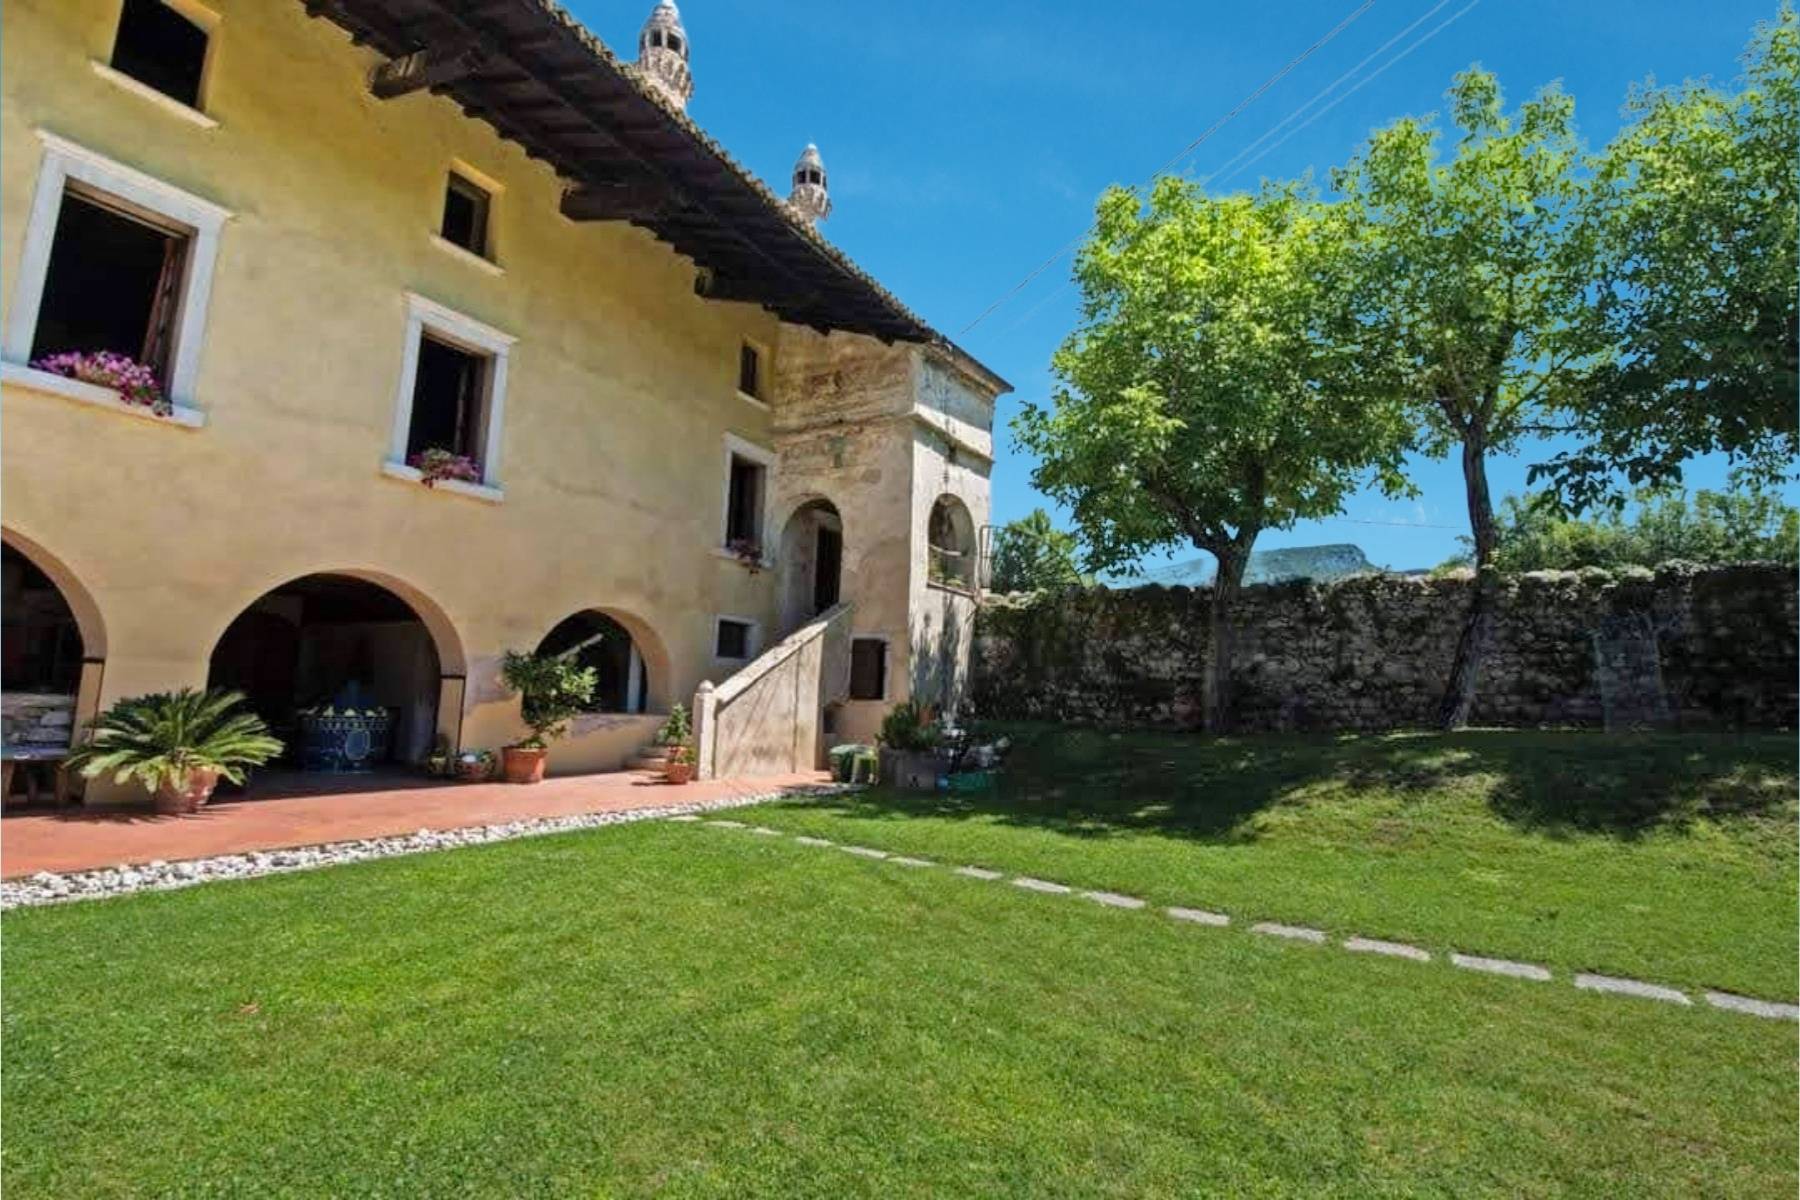 Splendida Villa Veneta con dependance e giardino - 35